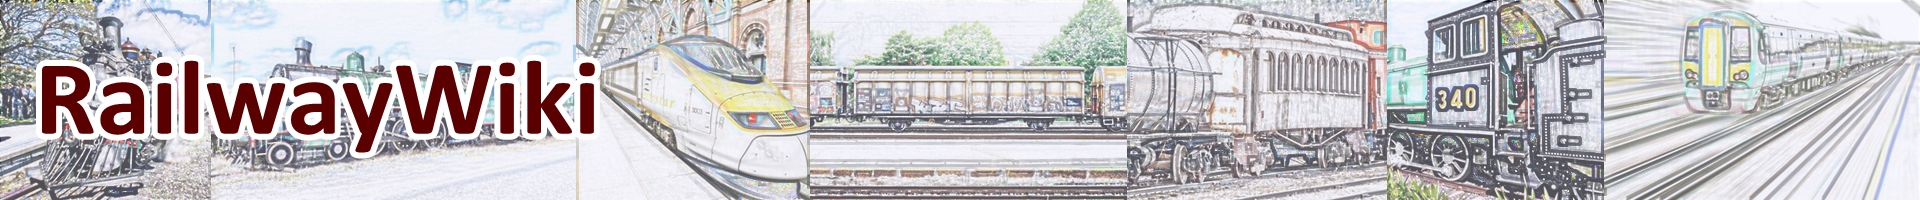 Railway Wiki